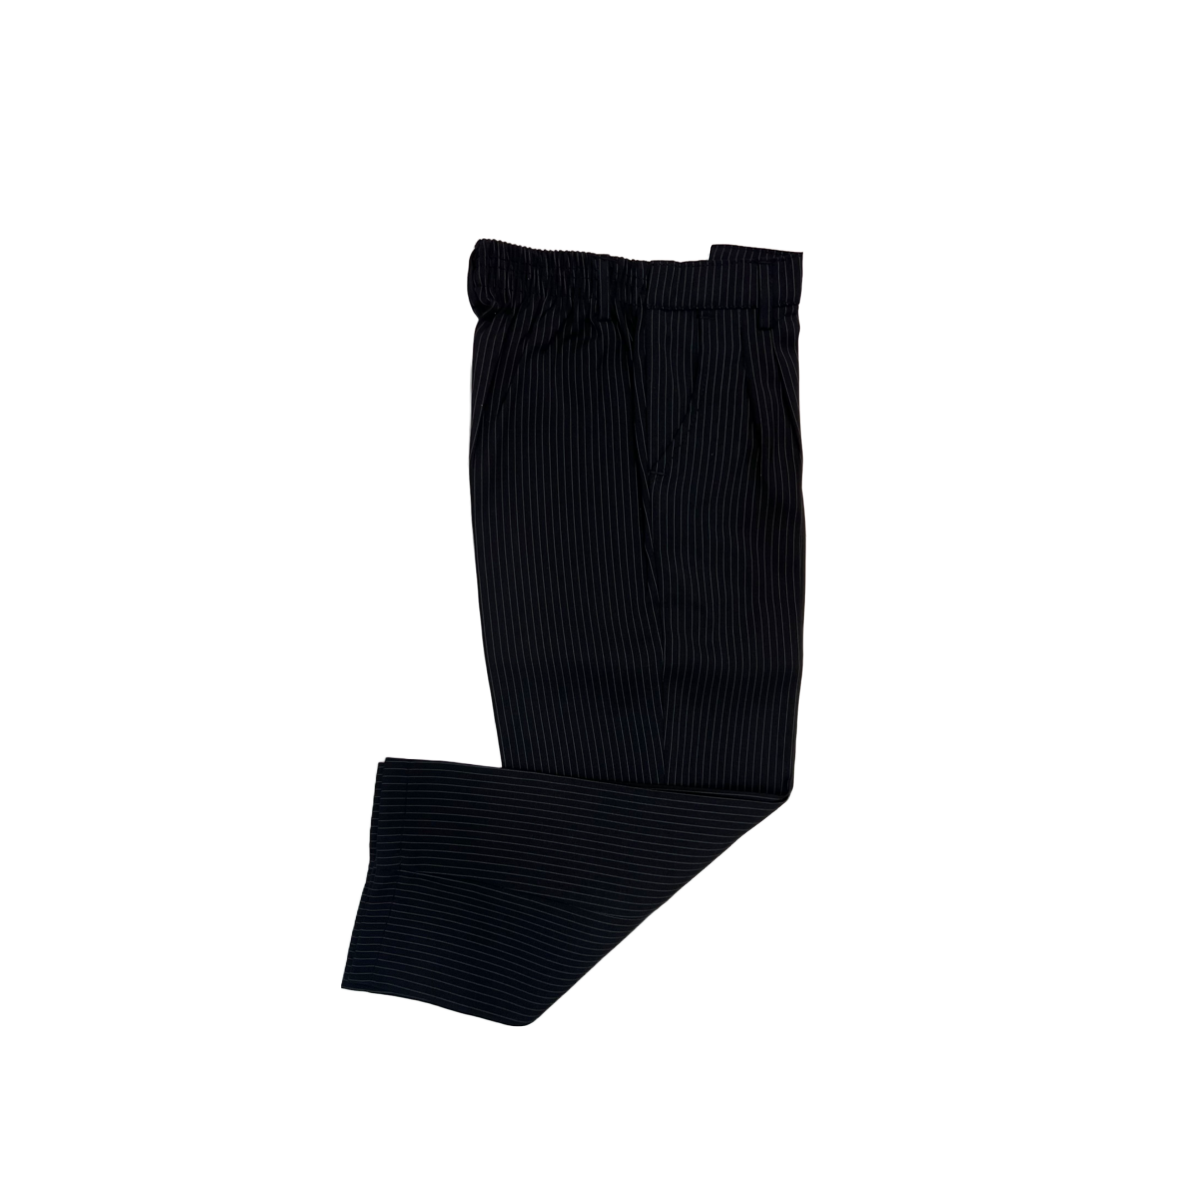 5-Piece Black Pinstripe Suit